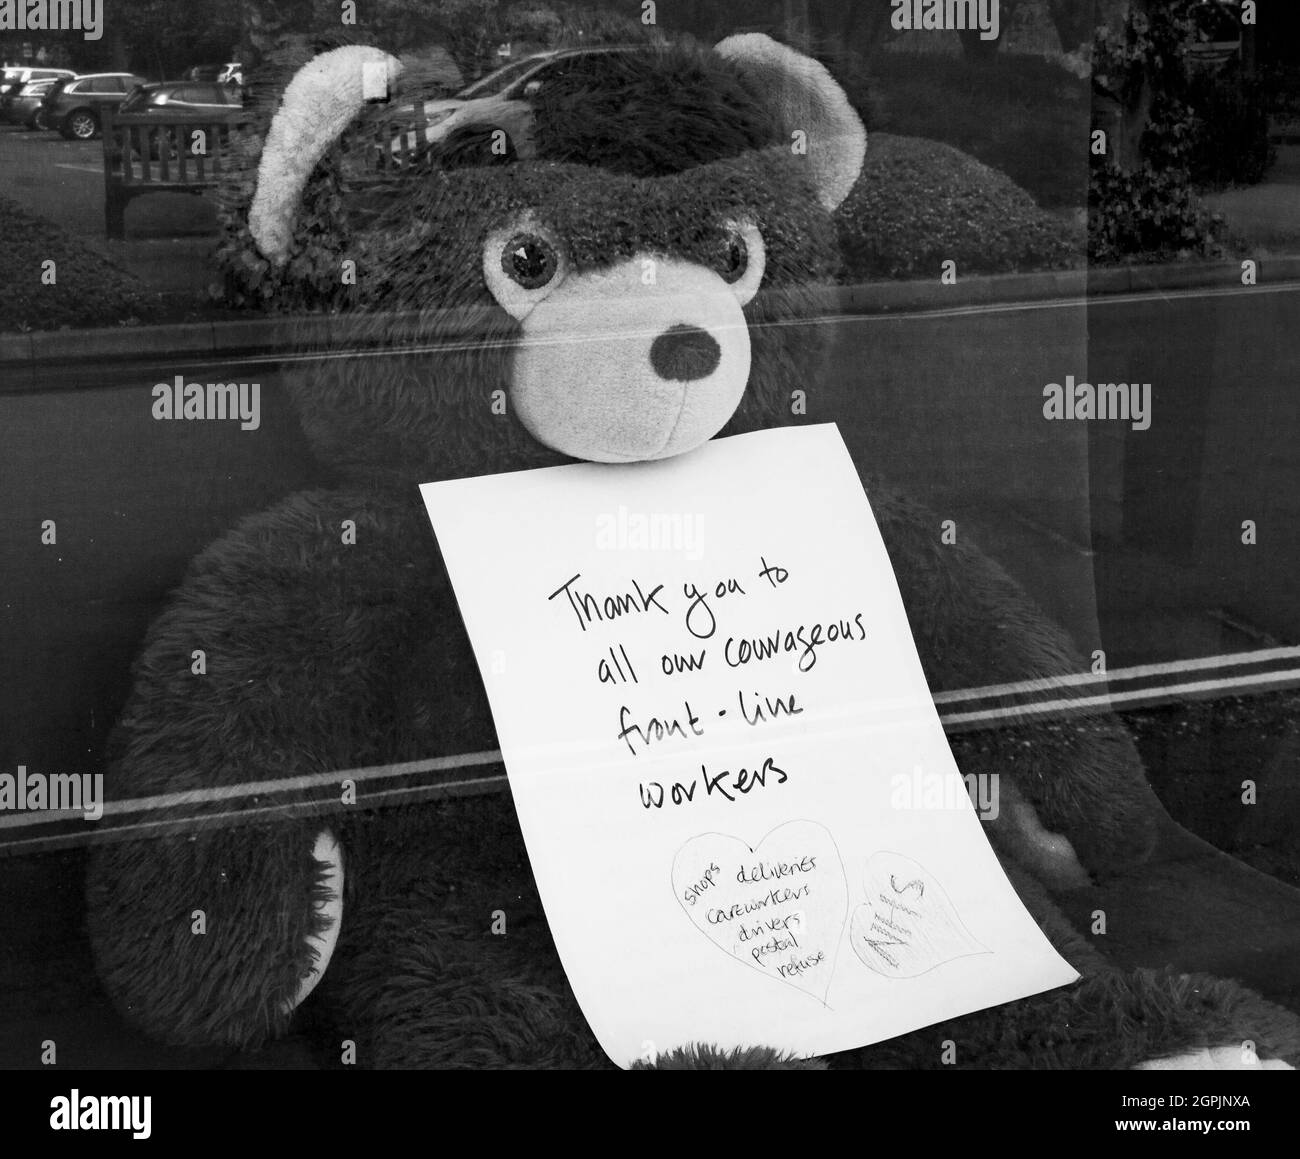 Oso de juguete en la ventana de la tienda con un mensaje agradeciendo a los trabajadores clave - durante la pandemia de Covid Foto de stock